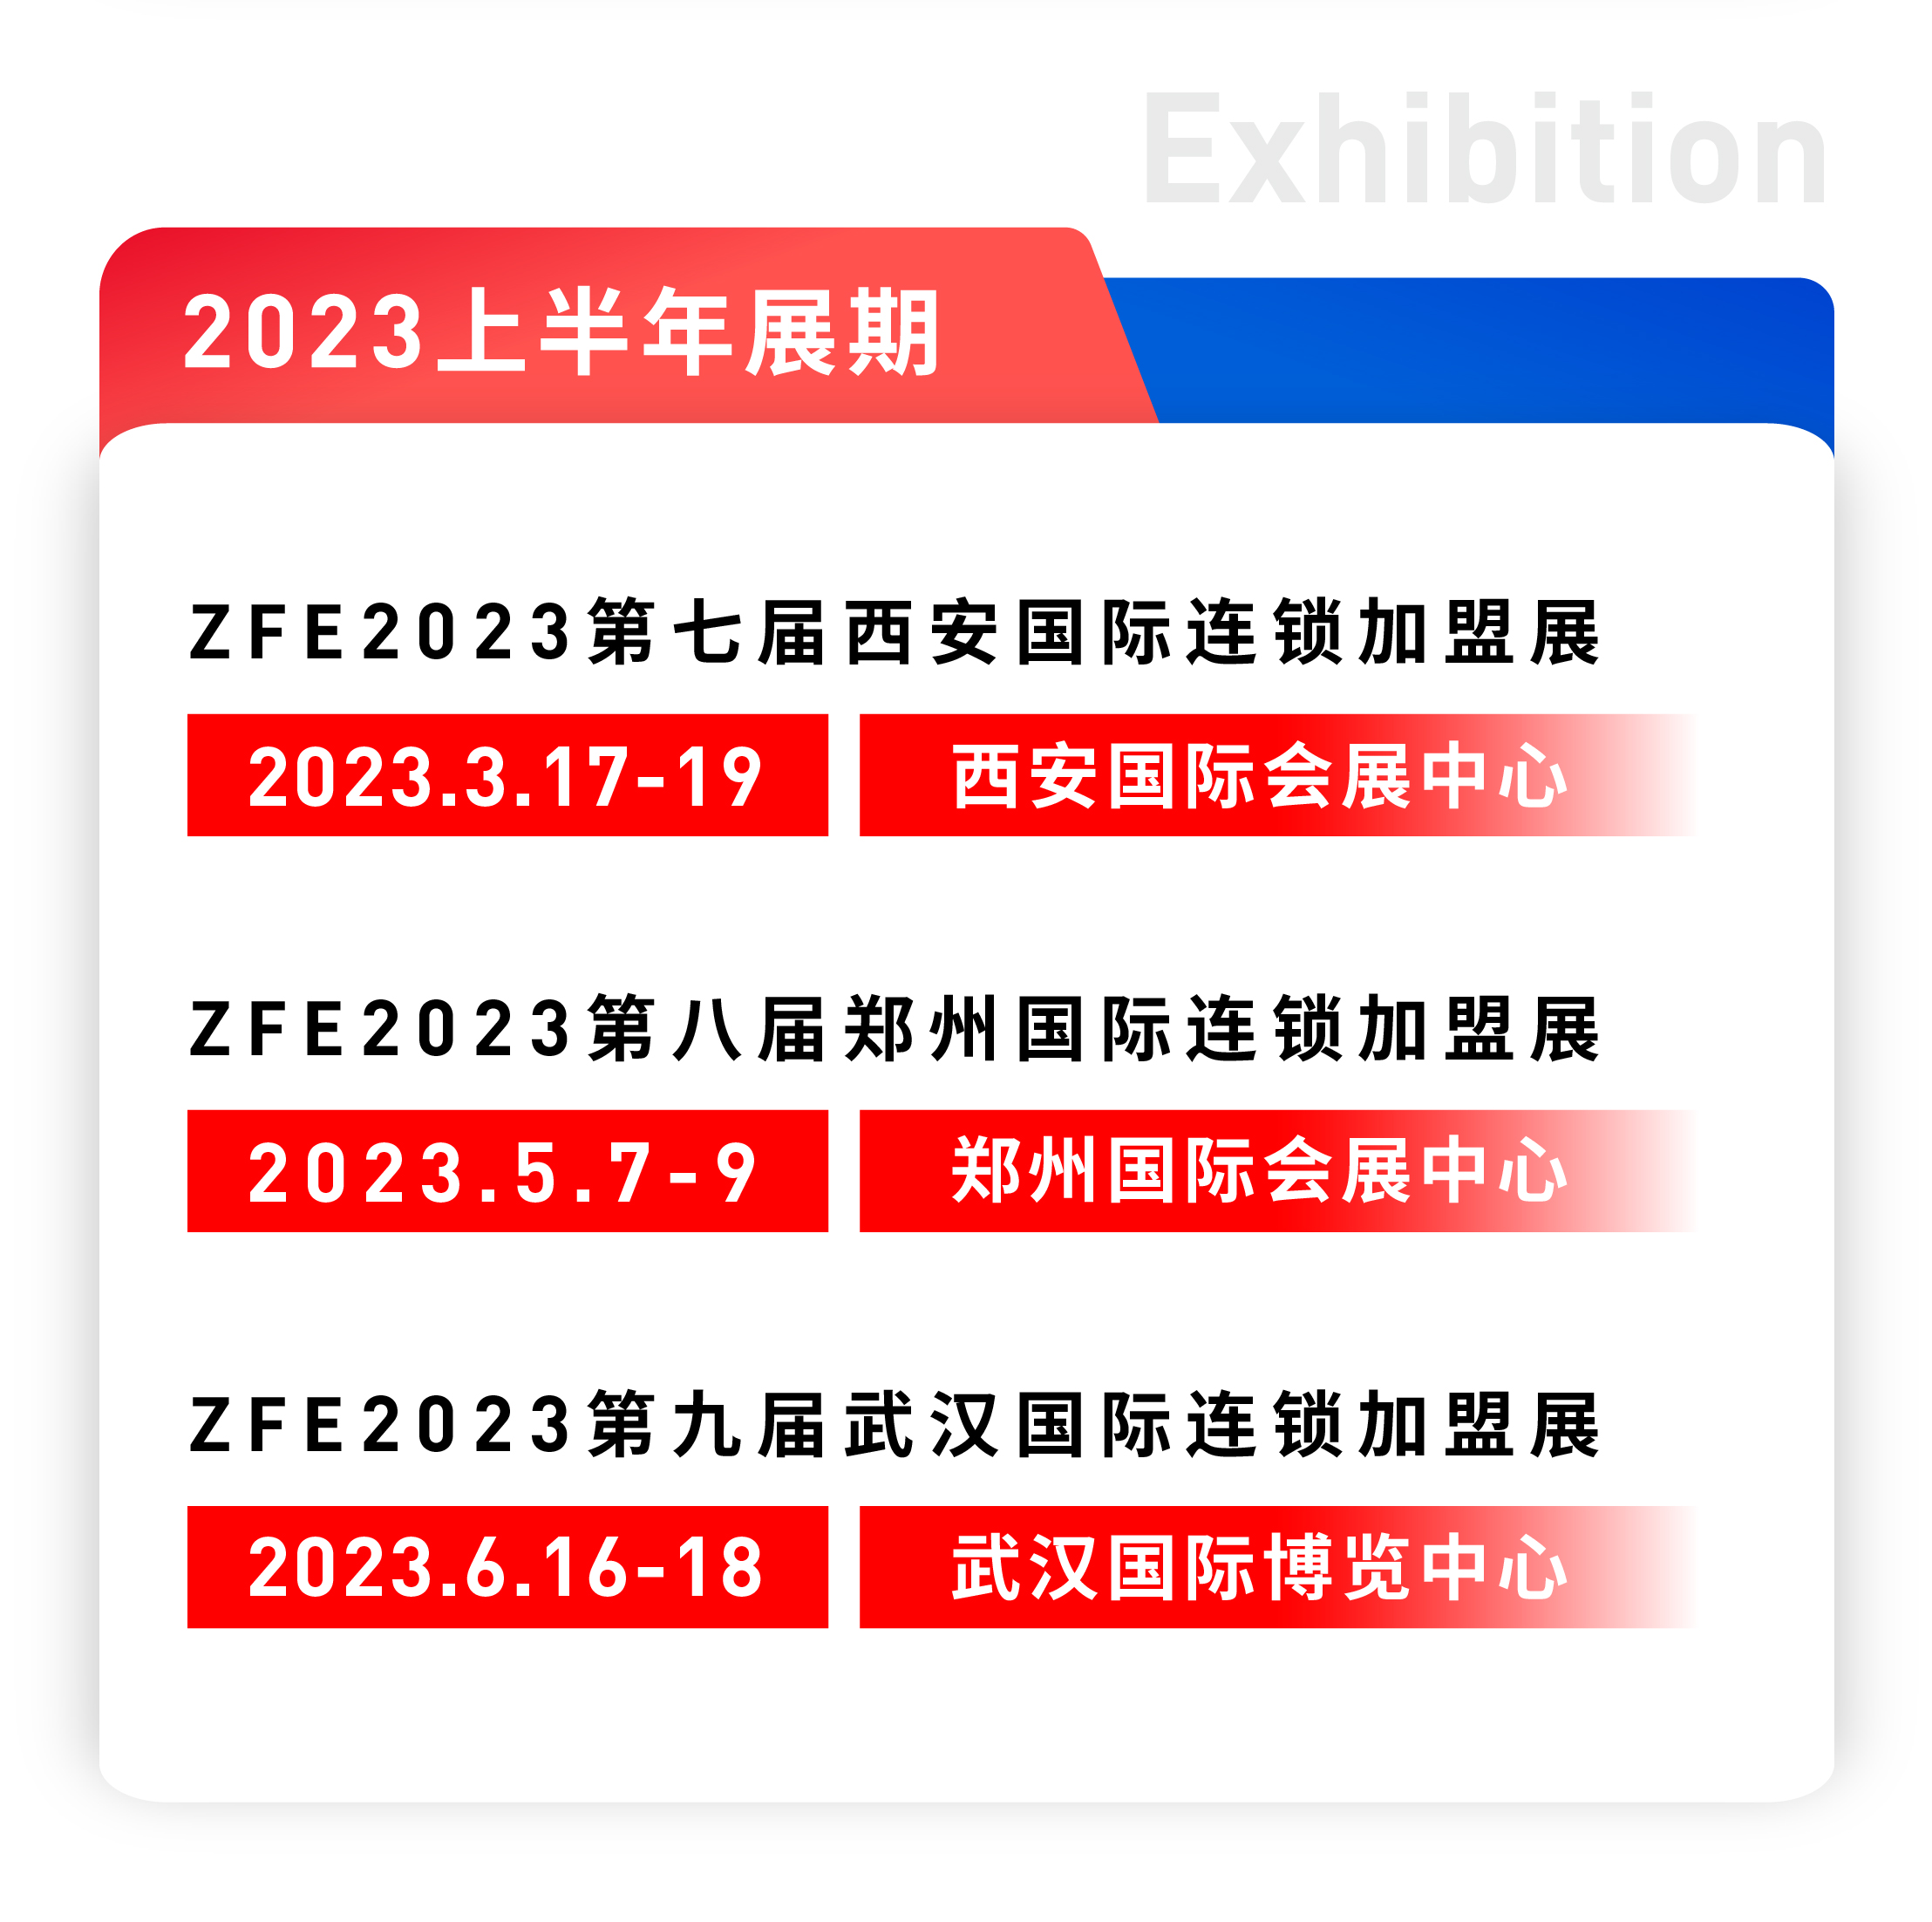 全力以赴，再创佳绩丨ZFE国际连锁加盟展2023上半年展期预告：(图3)